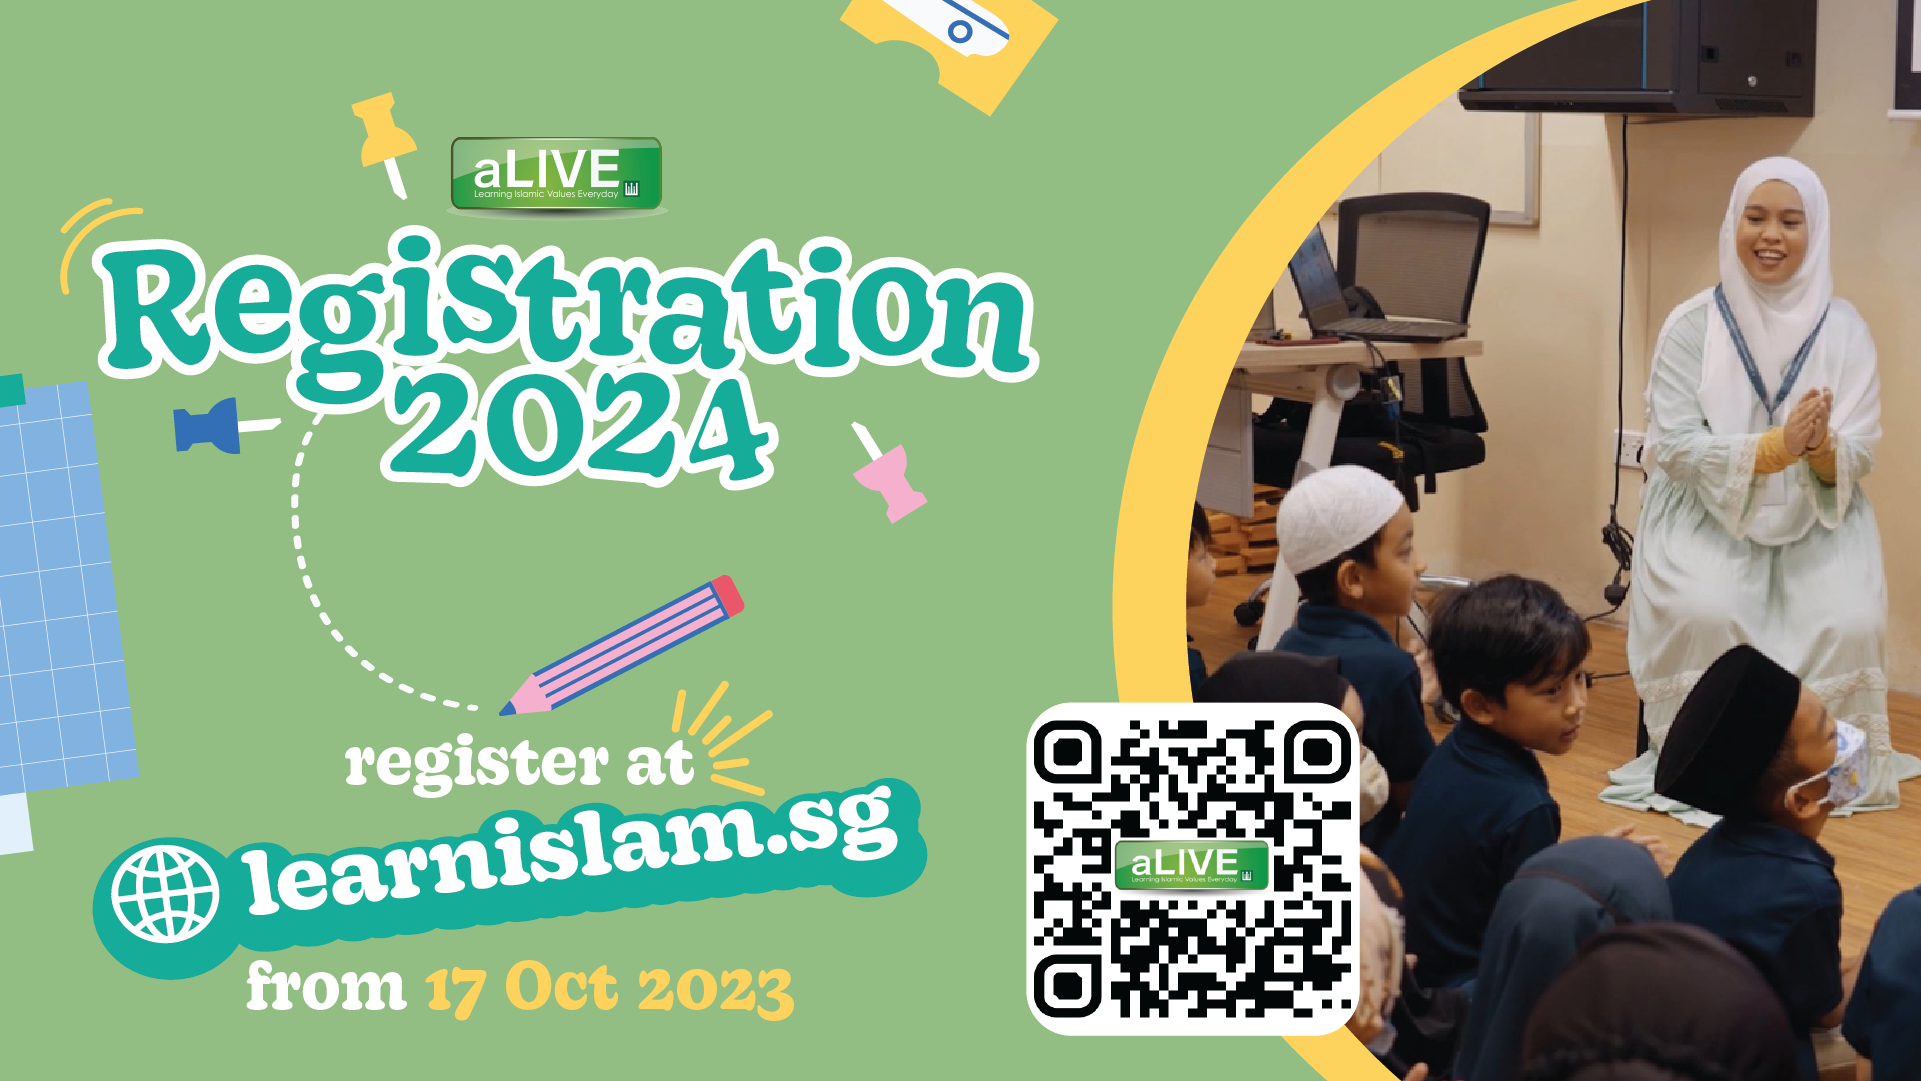 Al-Iman aLIVE Registration 2024